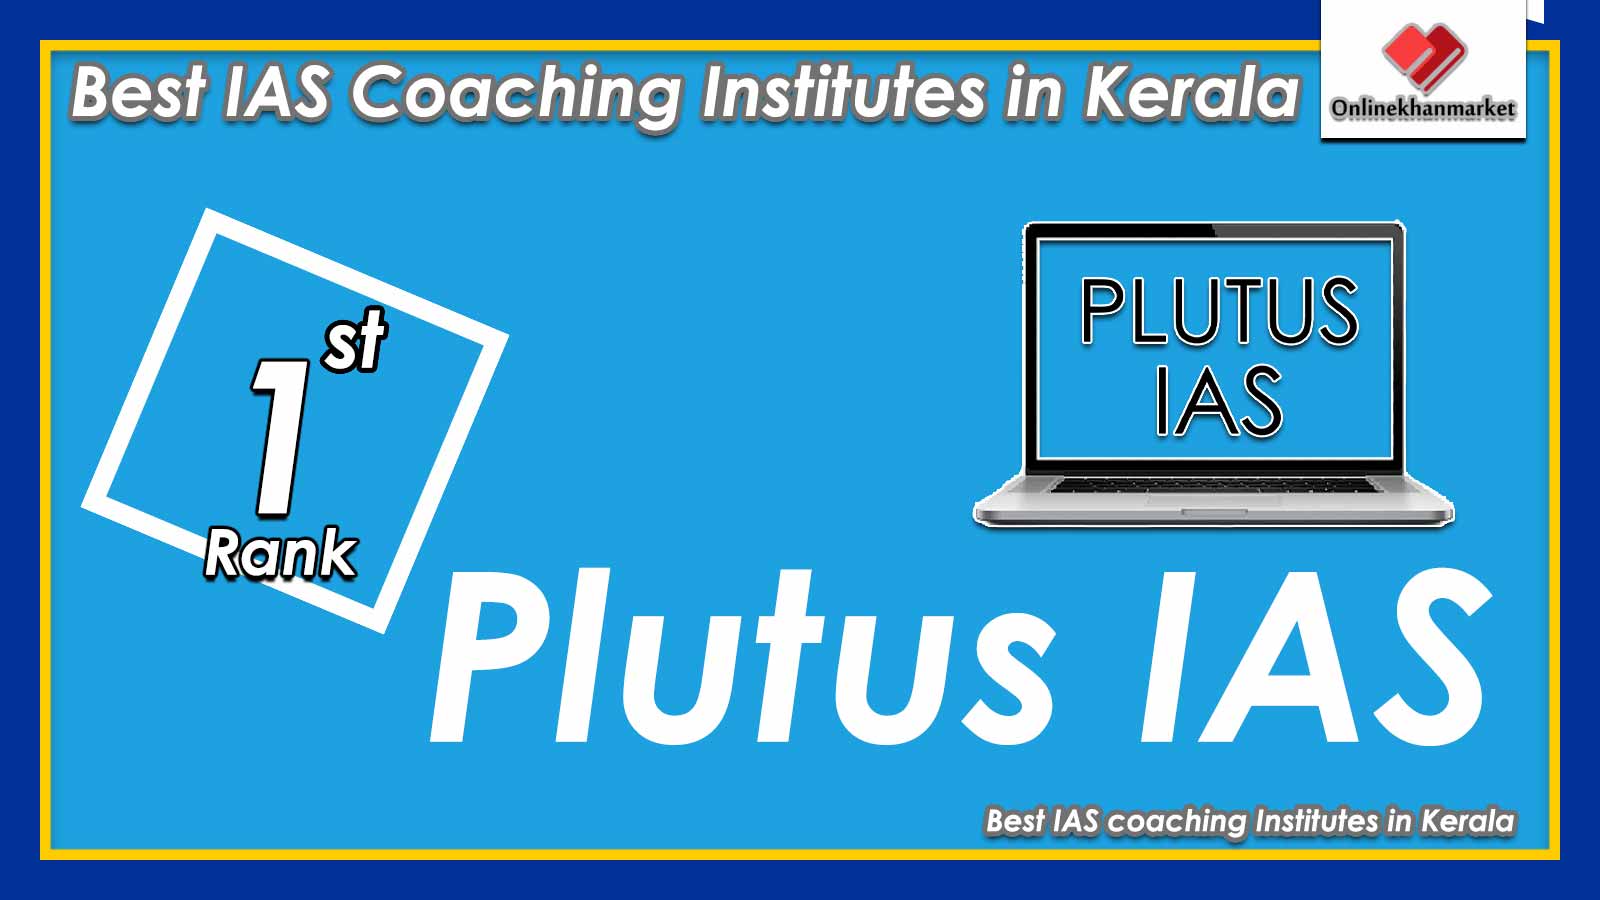 Top IAS Coaching in Kerala